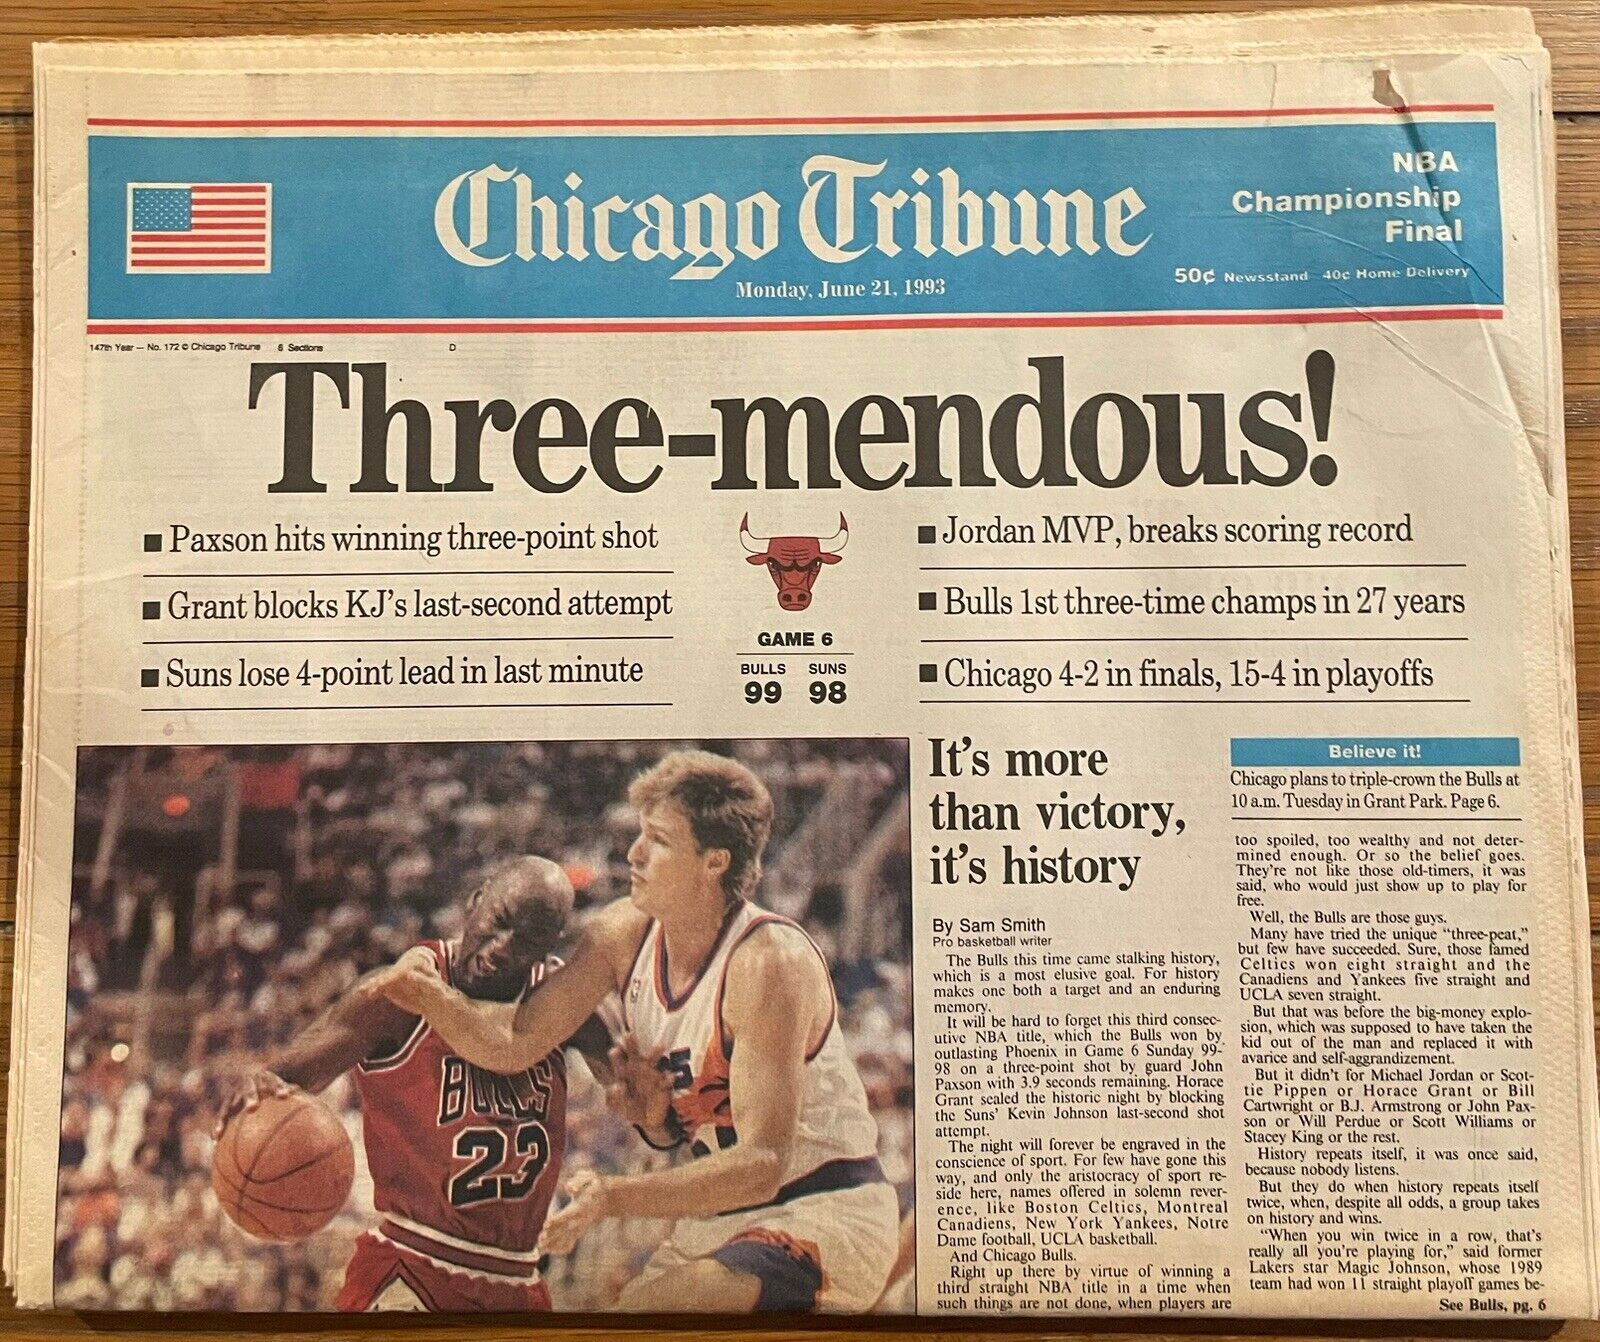 1993 Chicago Tribune Full Newspaper Bulls June 21, 1993 Three-Mendous